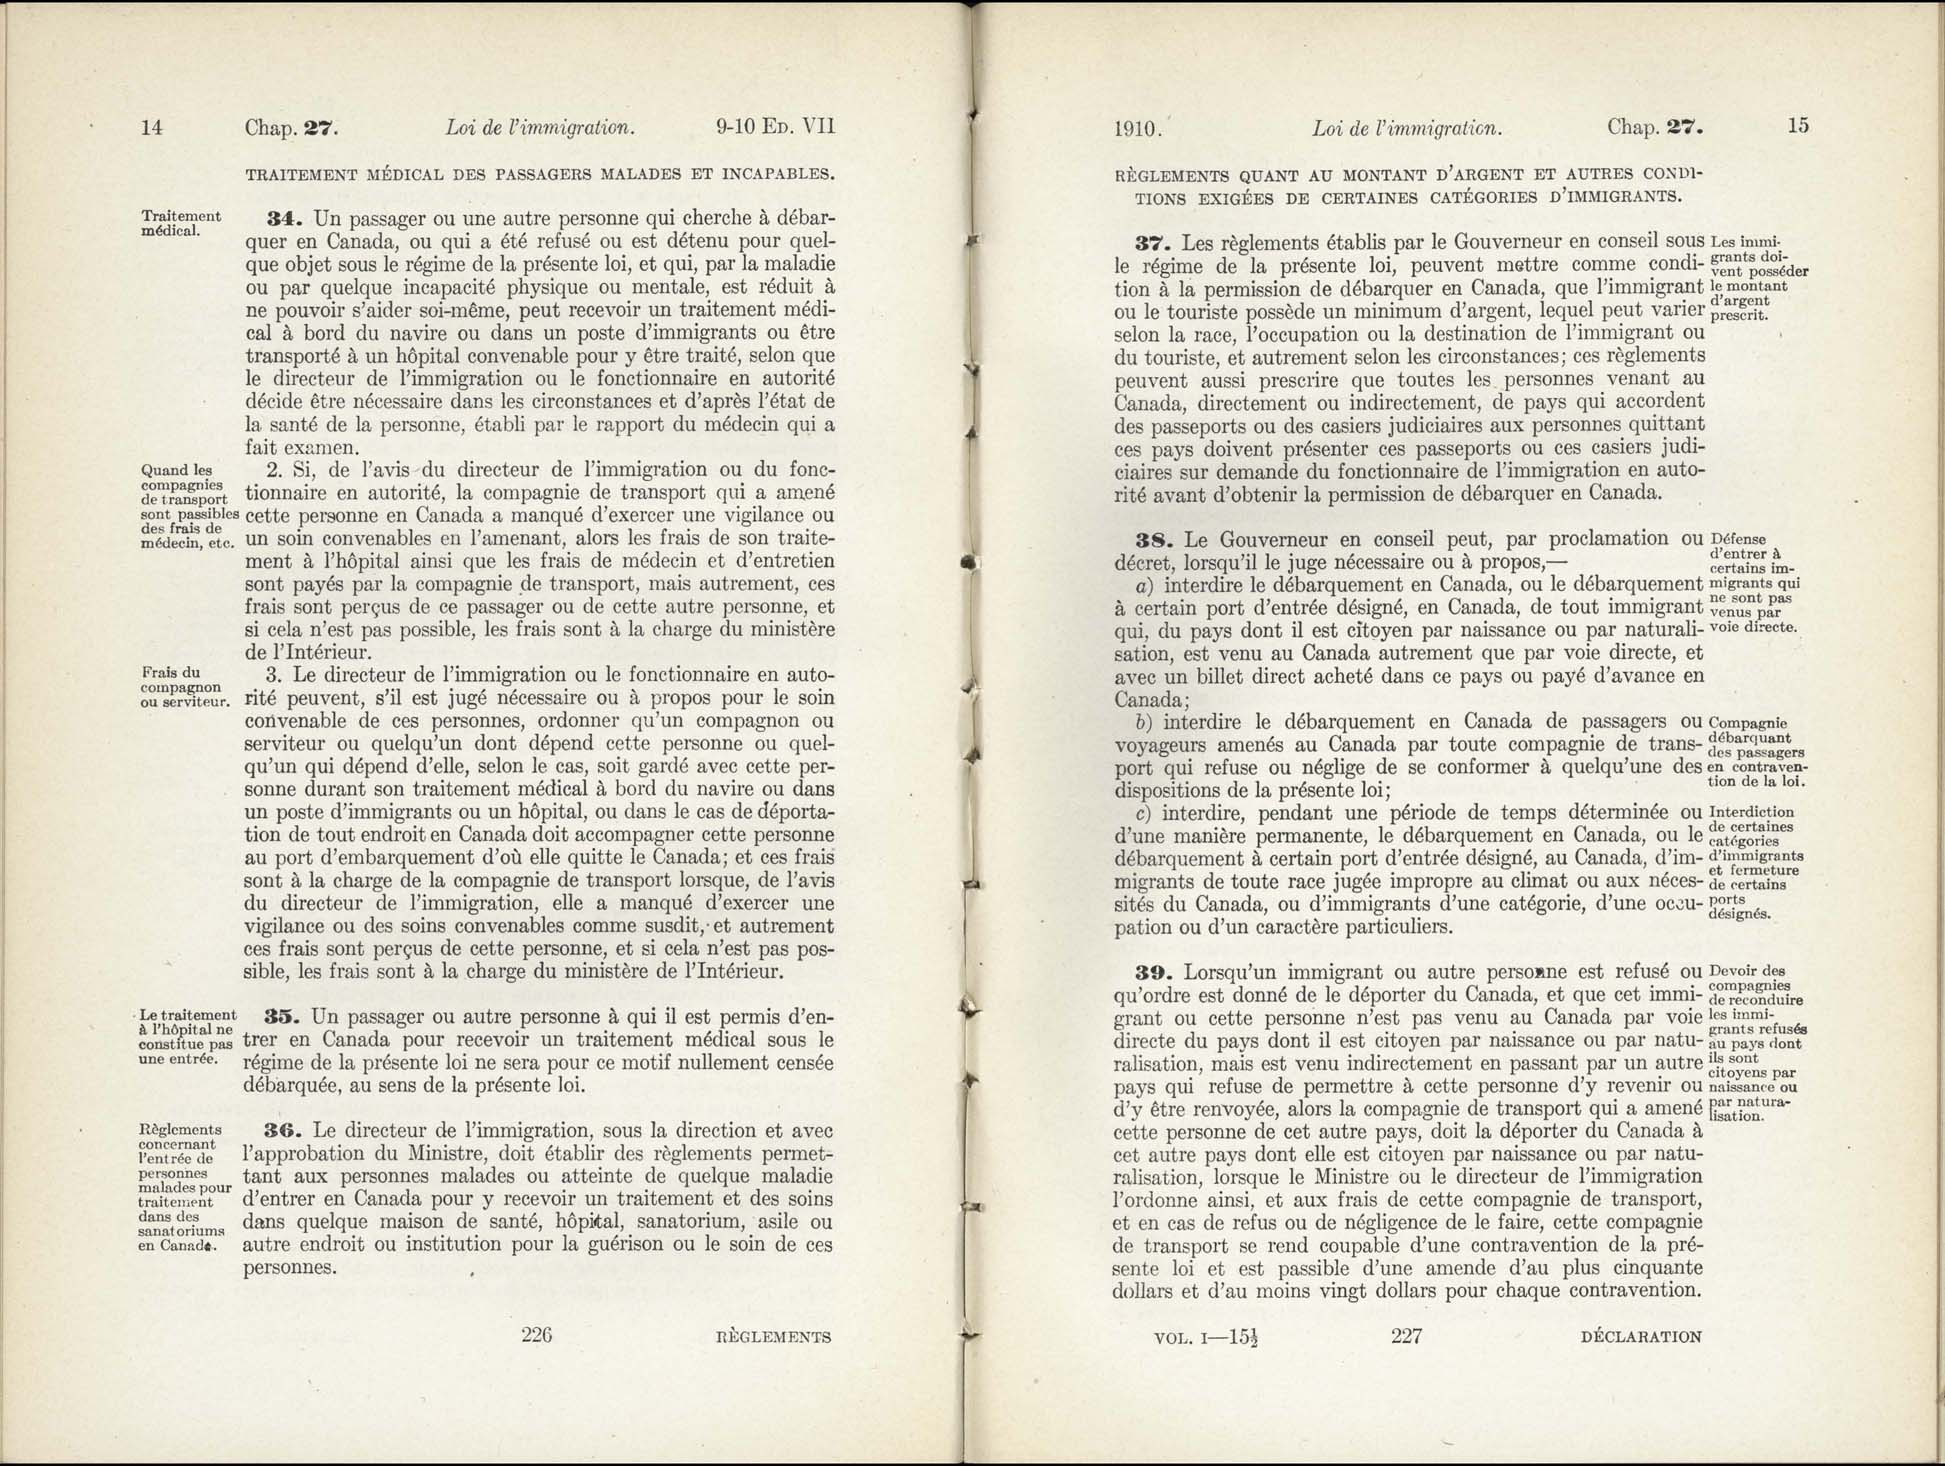 Chap 27 Page 226, 227 L’Acte d’immigration, 1910